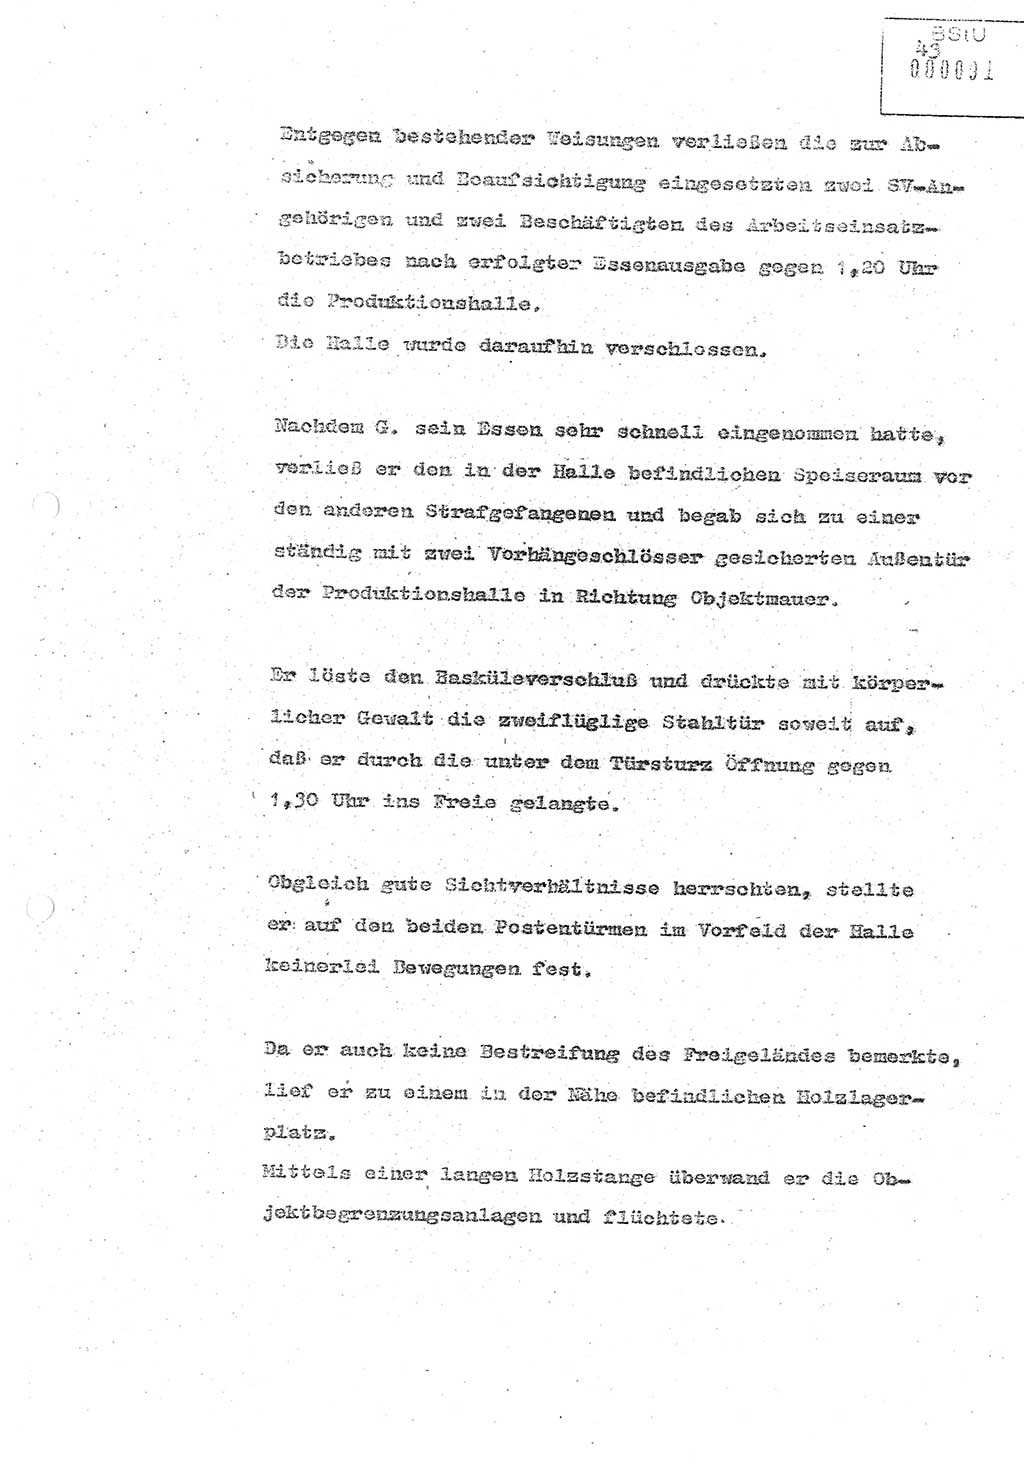 Referat (Oberst Siegfried Rataizick) zur Dienstkonferenz der Abteilung ⅩⅣ des MfS Berlin [Ministerium für Staatssicherheit, Deutsche Demokratische Republik (DDR)] Berlin-Hohenschönhausen vom 5.3.1986 bis 6.3.1986, Abteilung XIV, Berlin, 20.2.1986, Seite 43 (Ref. Di.-Konf. Abt. ⅩⅣ MfS DDR Bln. 1986, S. 43)